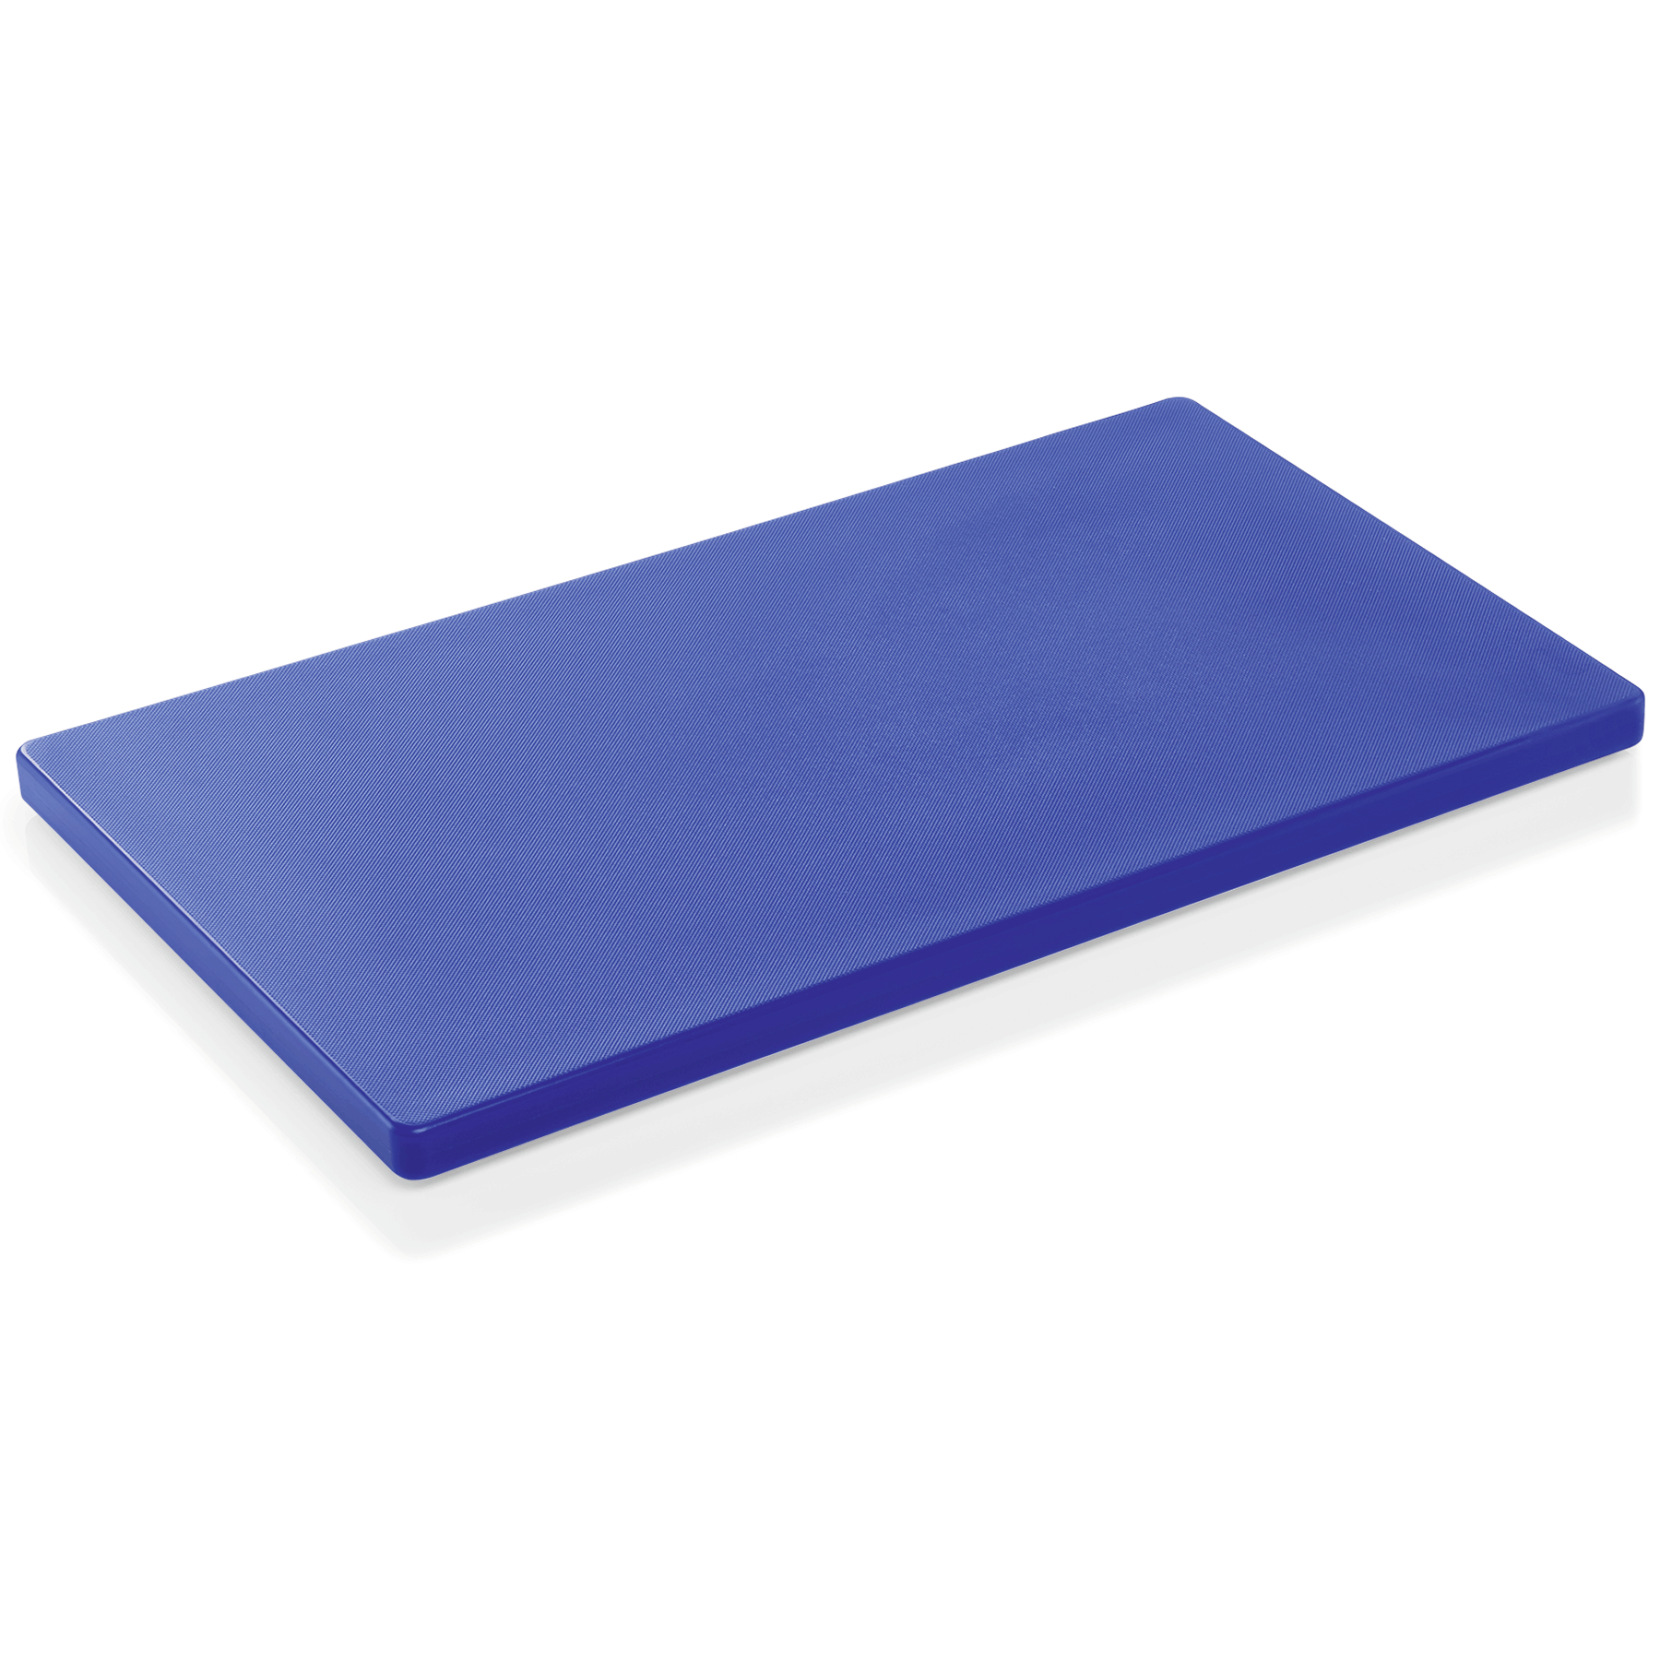 Schneidbrett HACCP, 50 x 30 x 2 cm, blau, Polyethylen